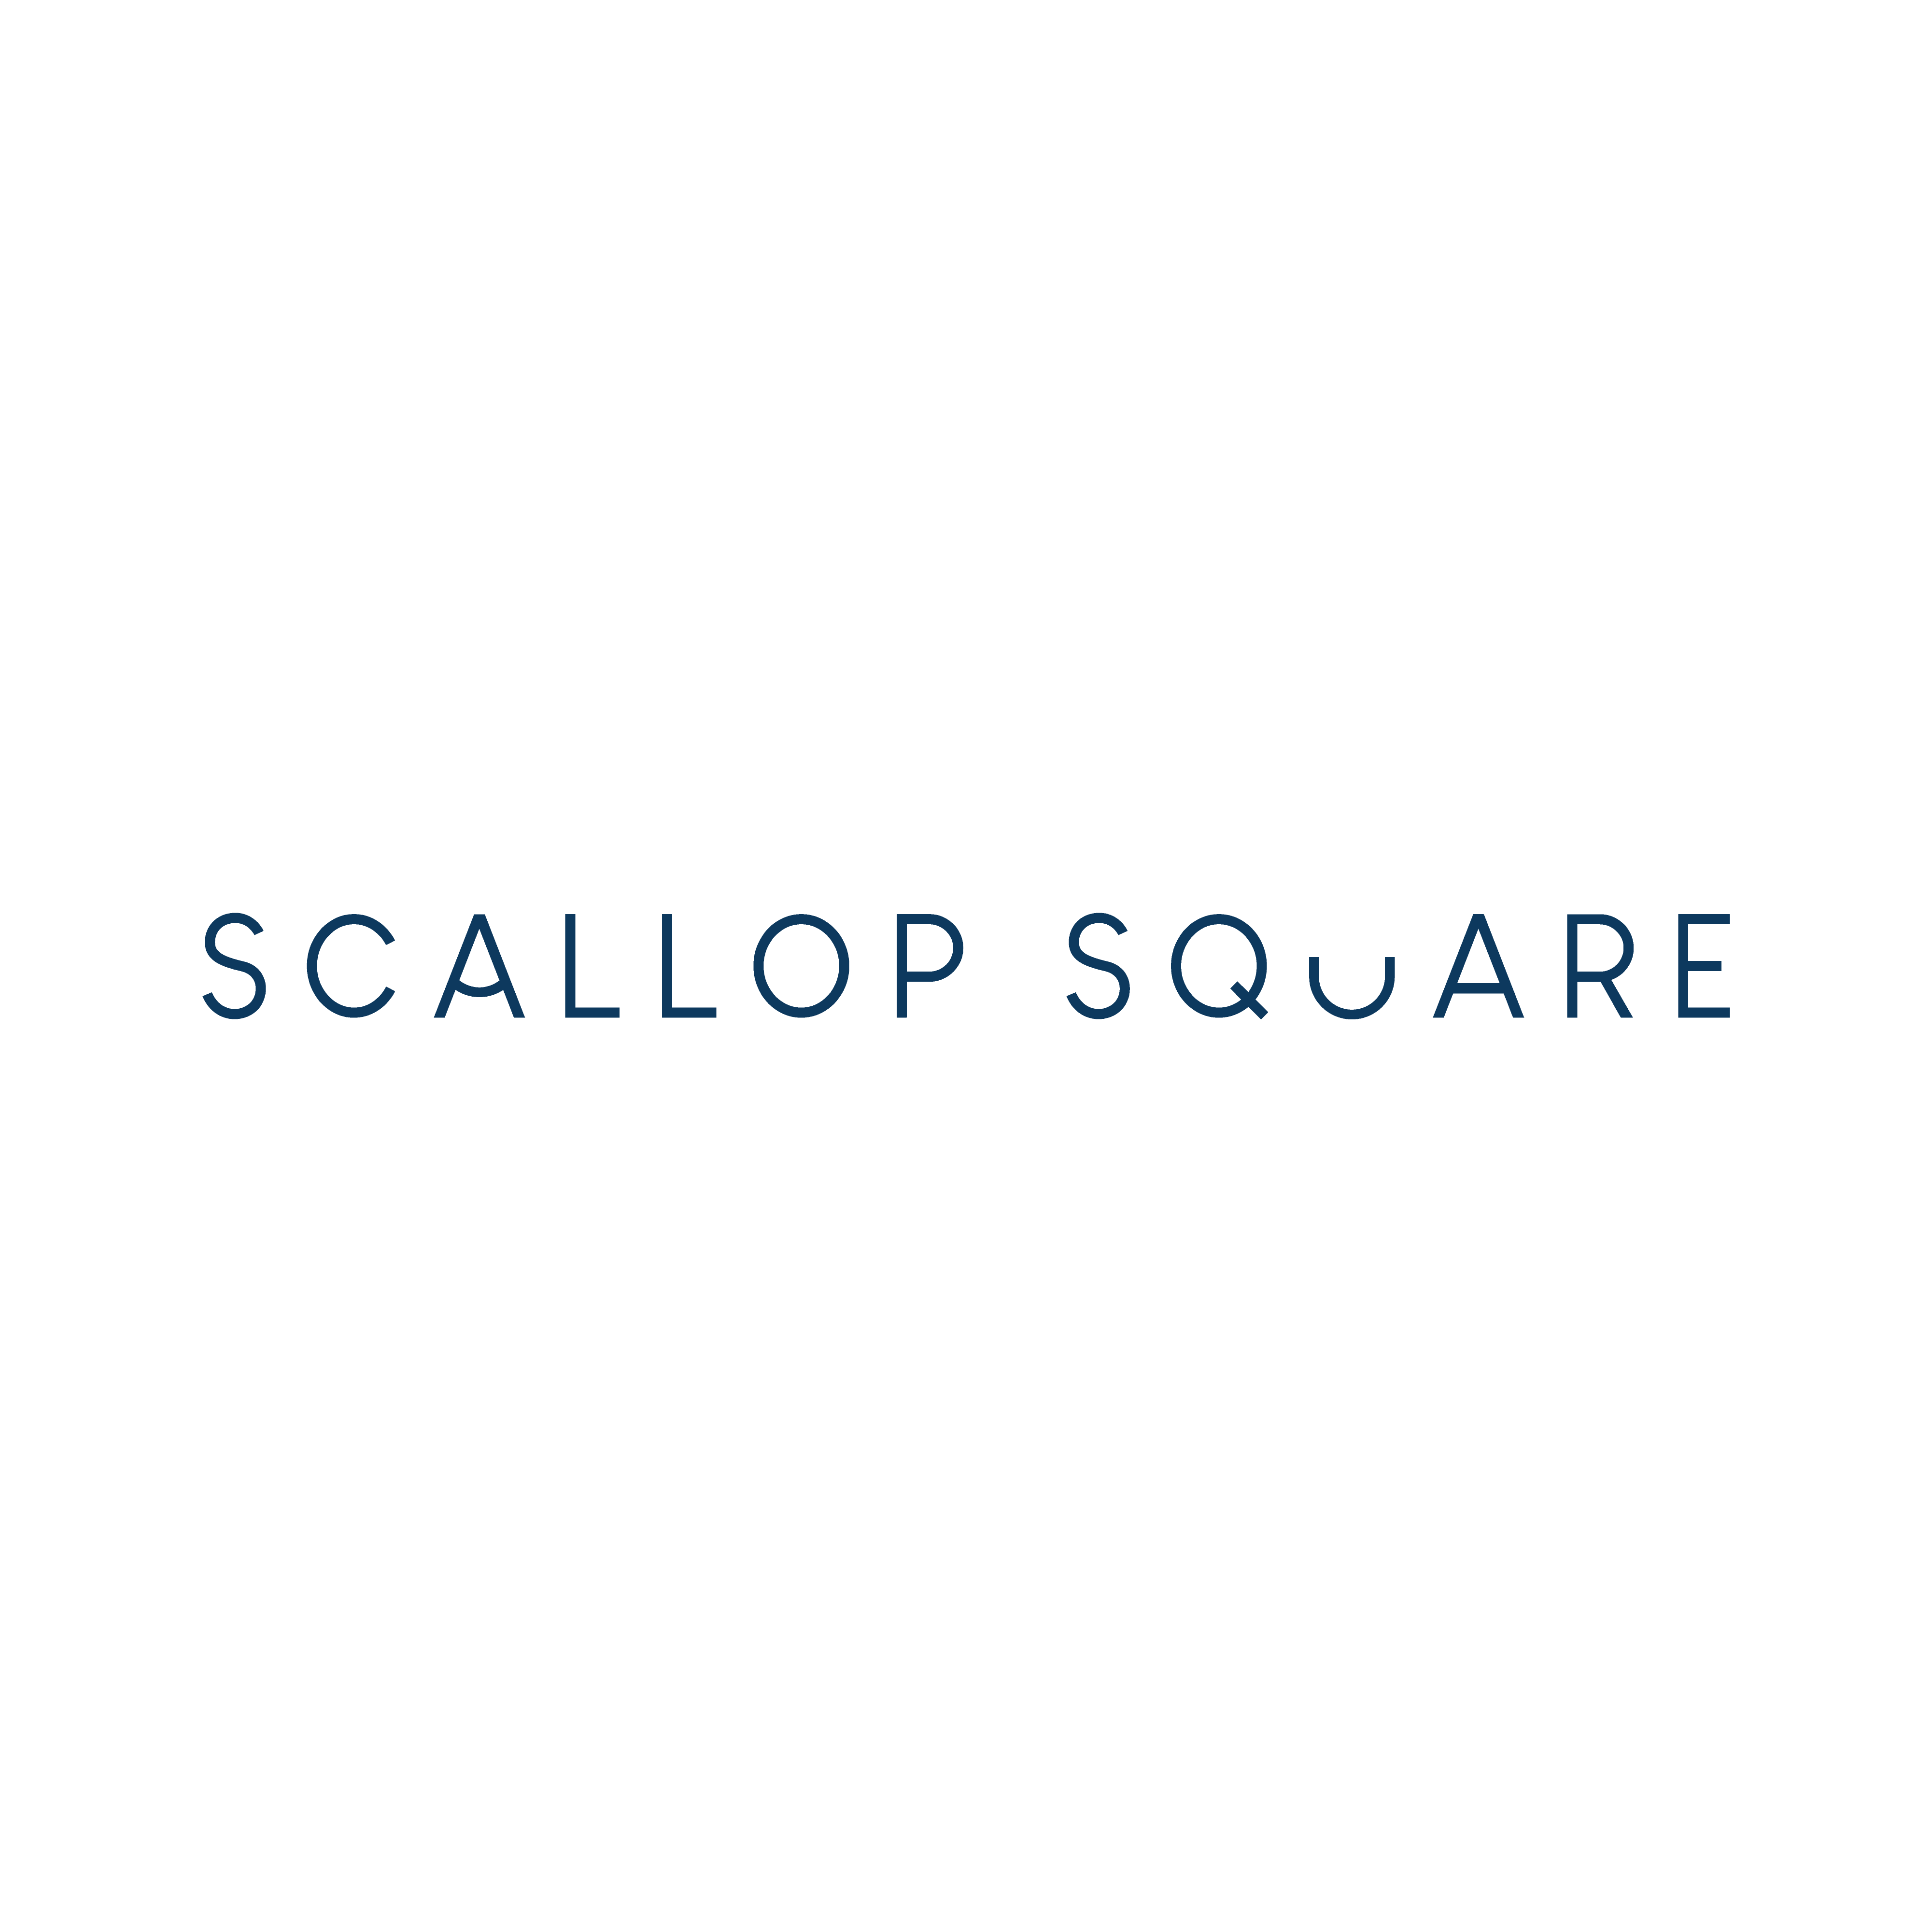 Scallop Square